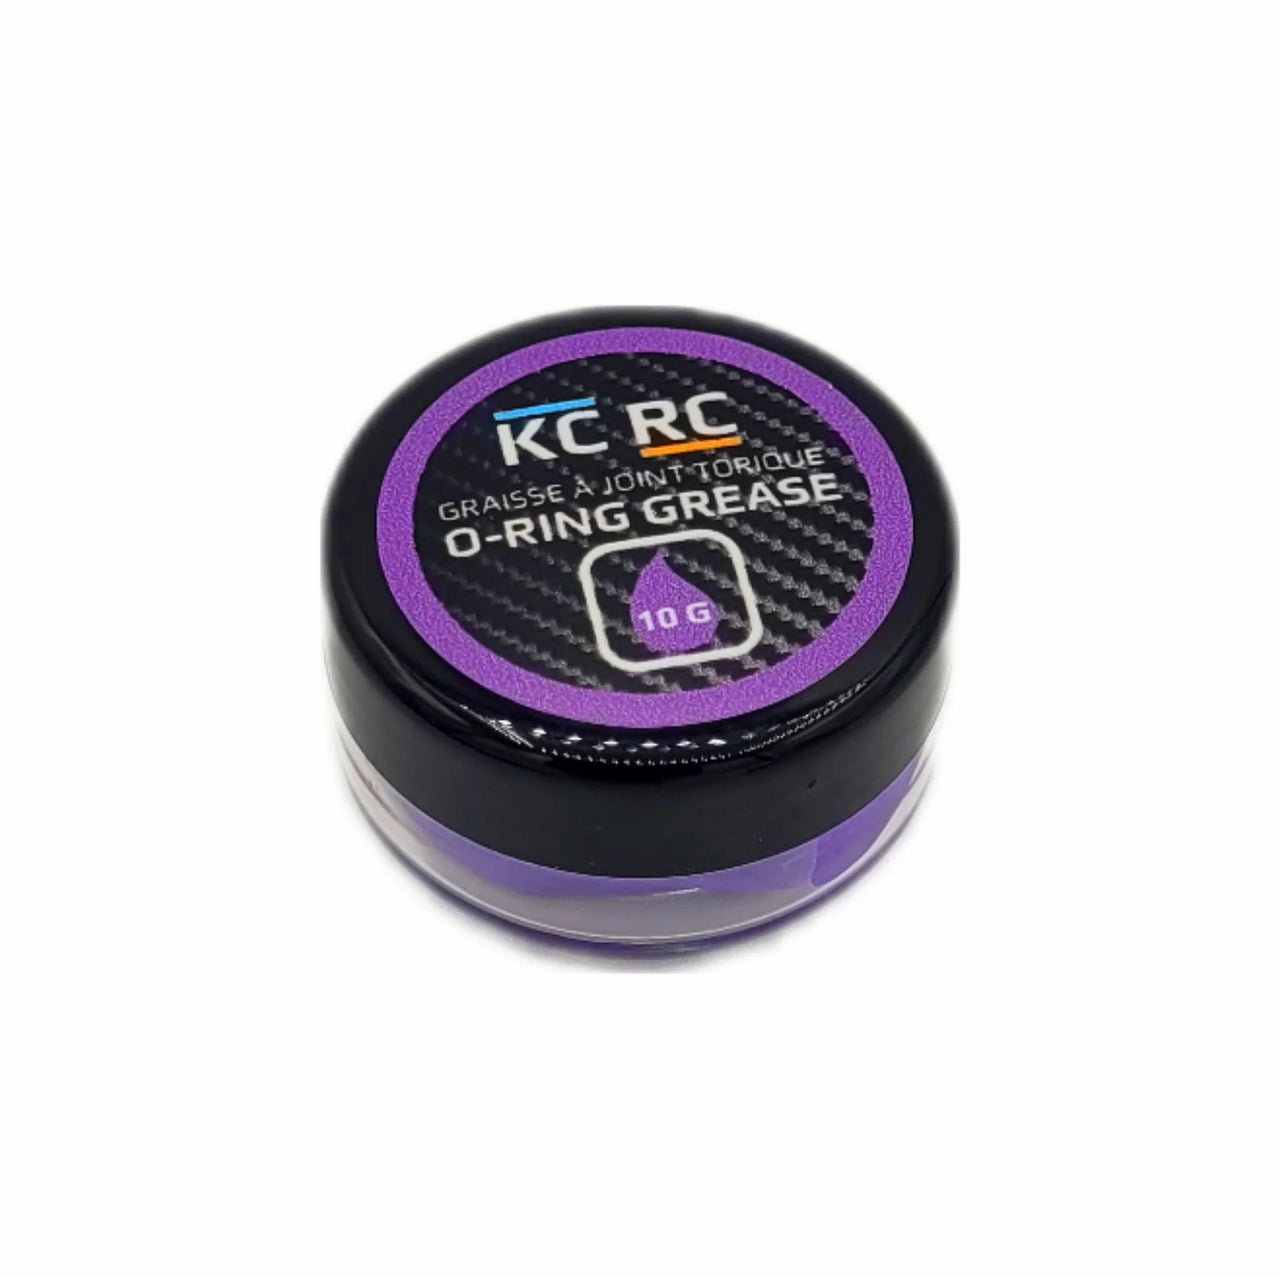 AGORM10G KC RC O-Ring Grease (10G)